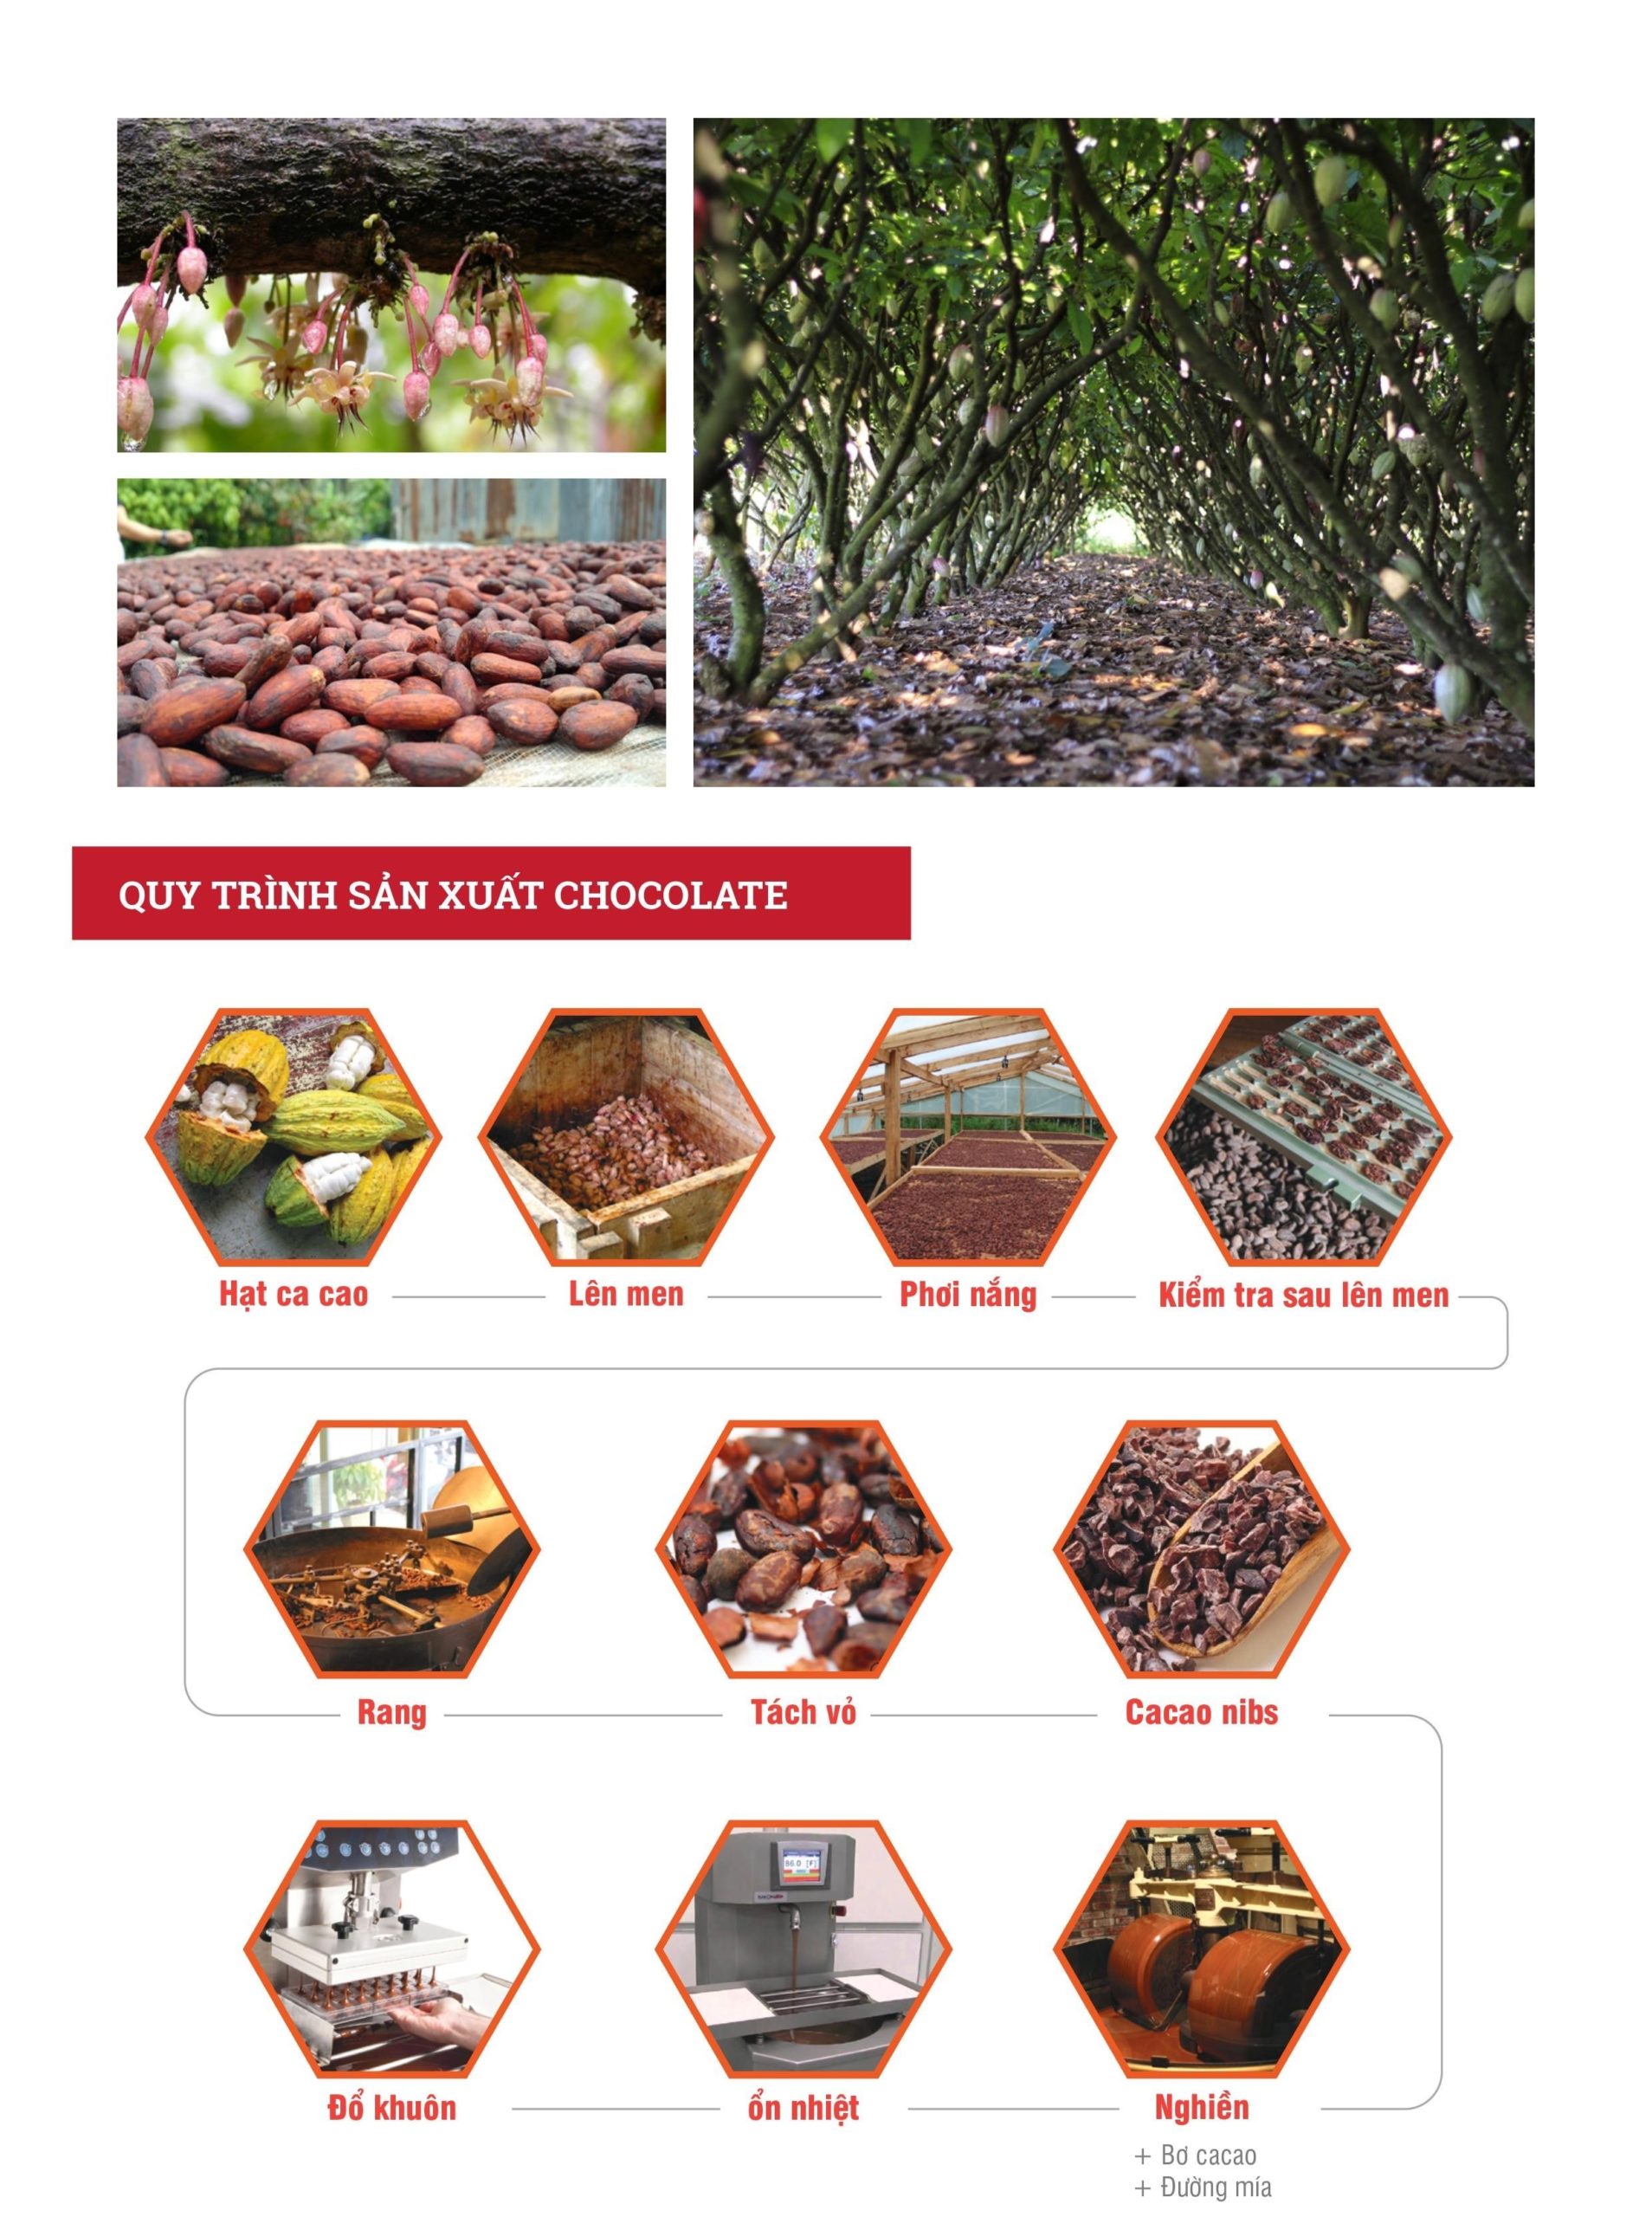 Câu chuyện về Hạt cacao